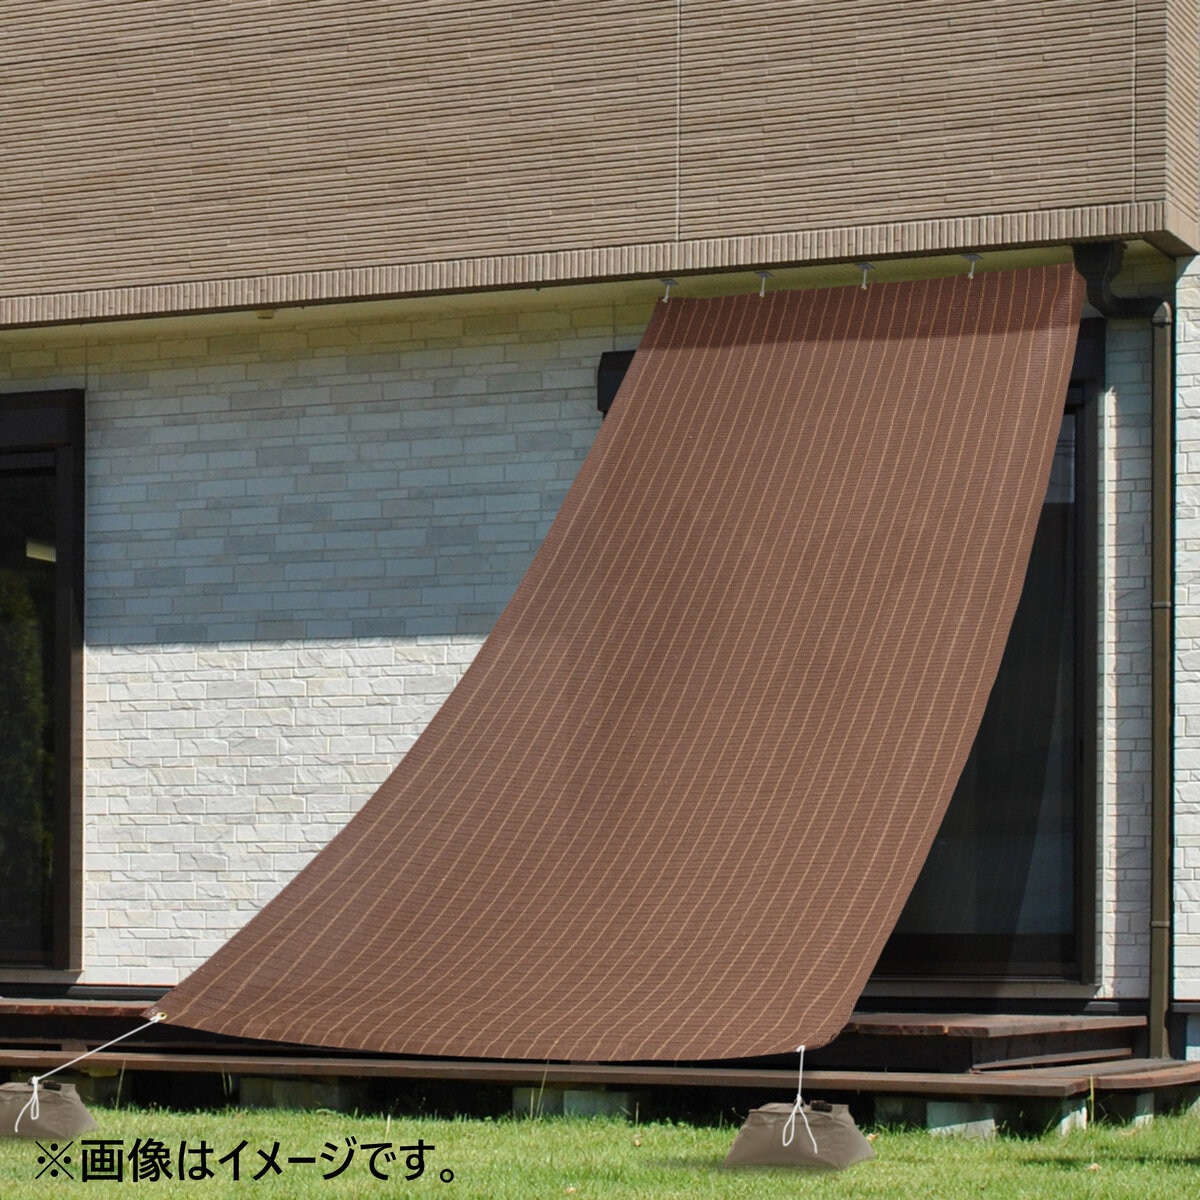 TAKASHO SHADE AWNING 200 x 300 cm